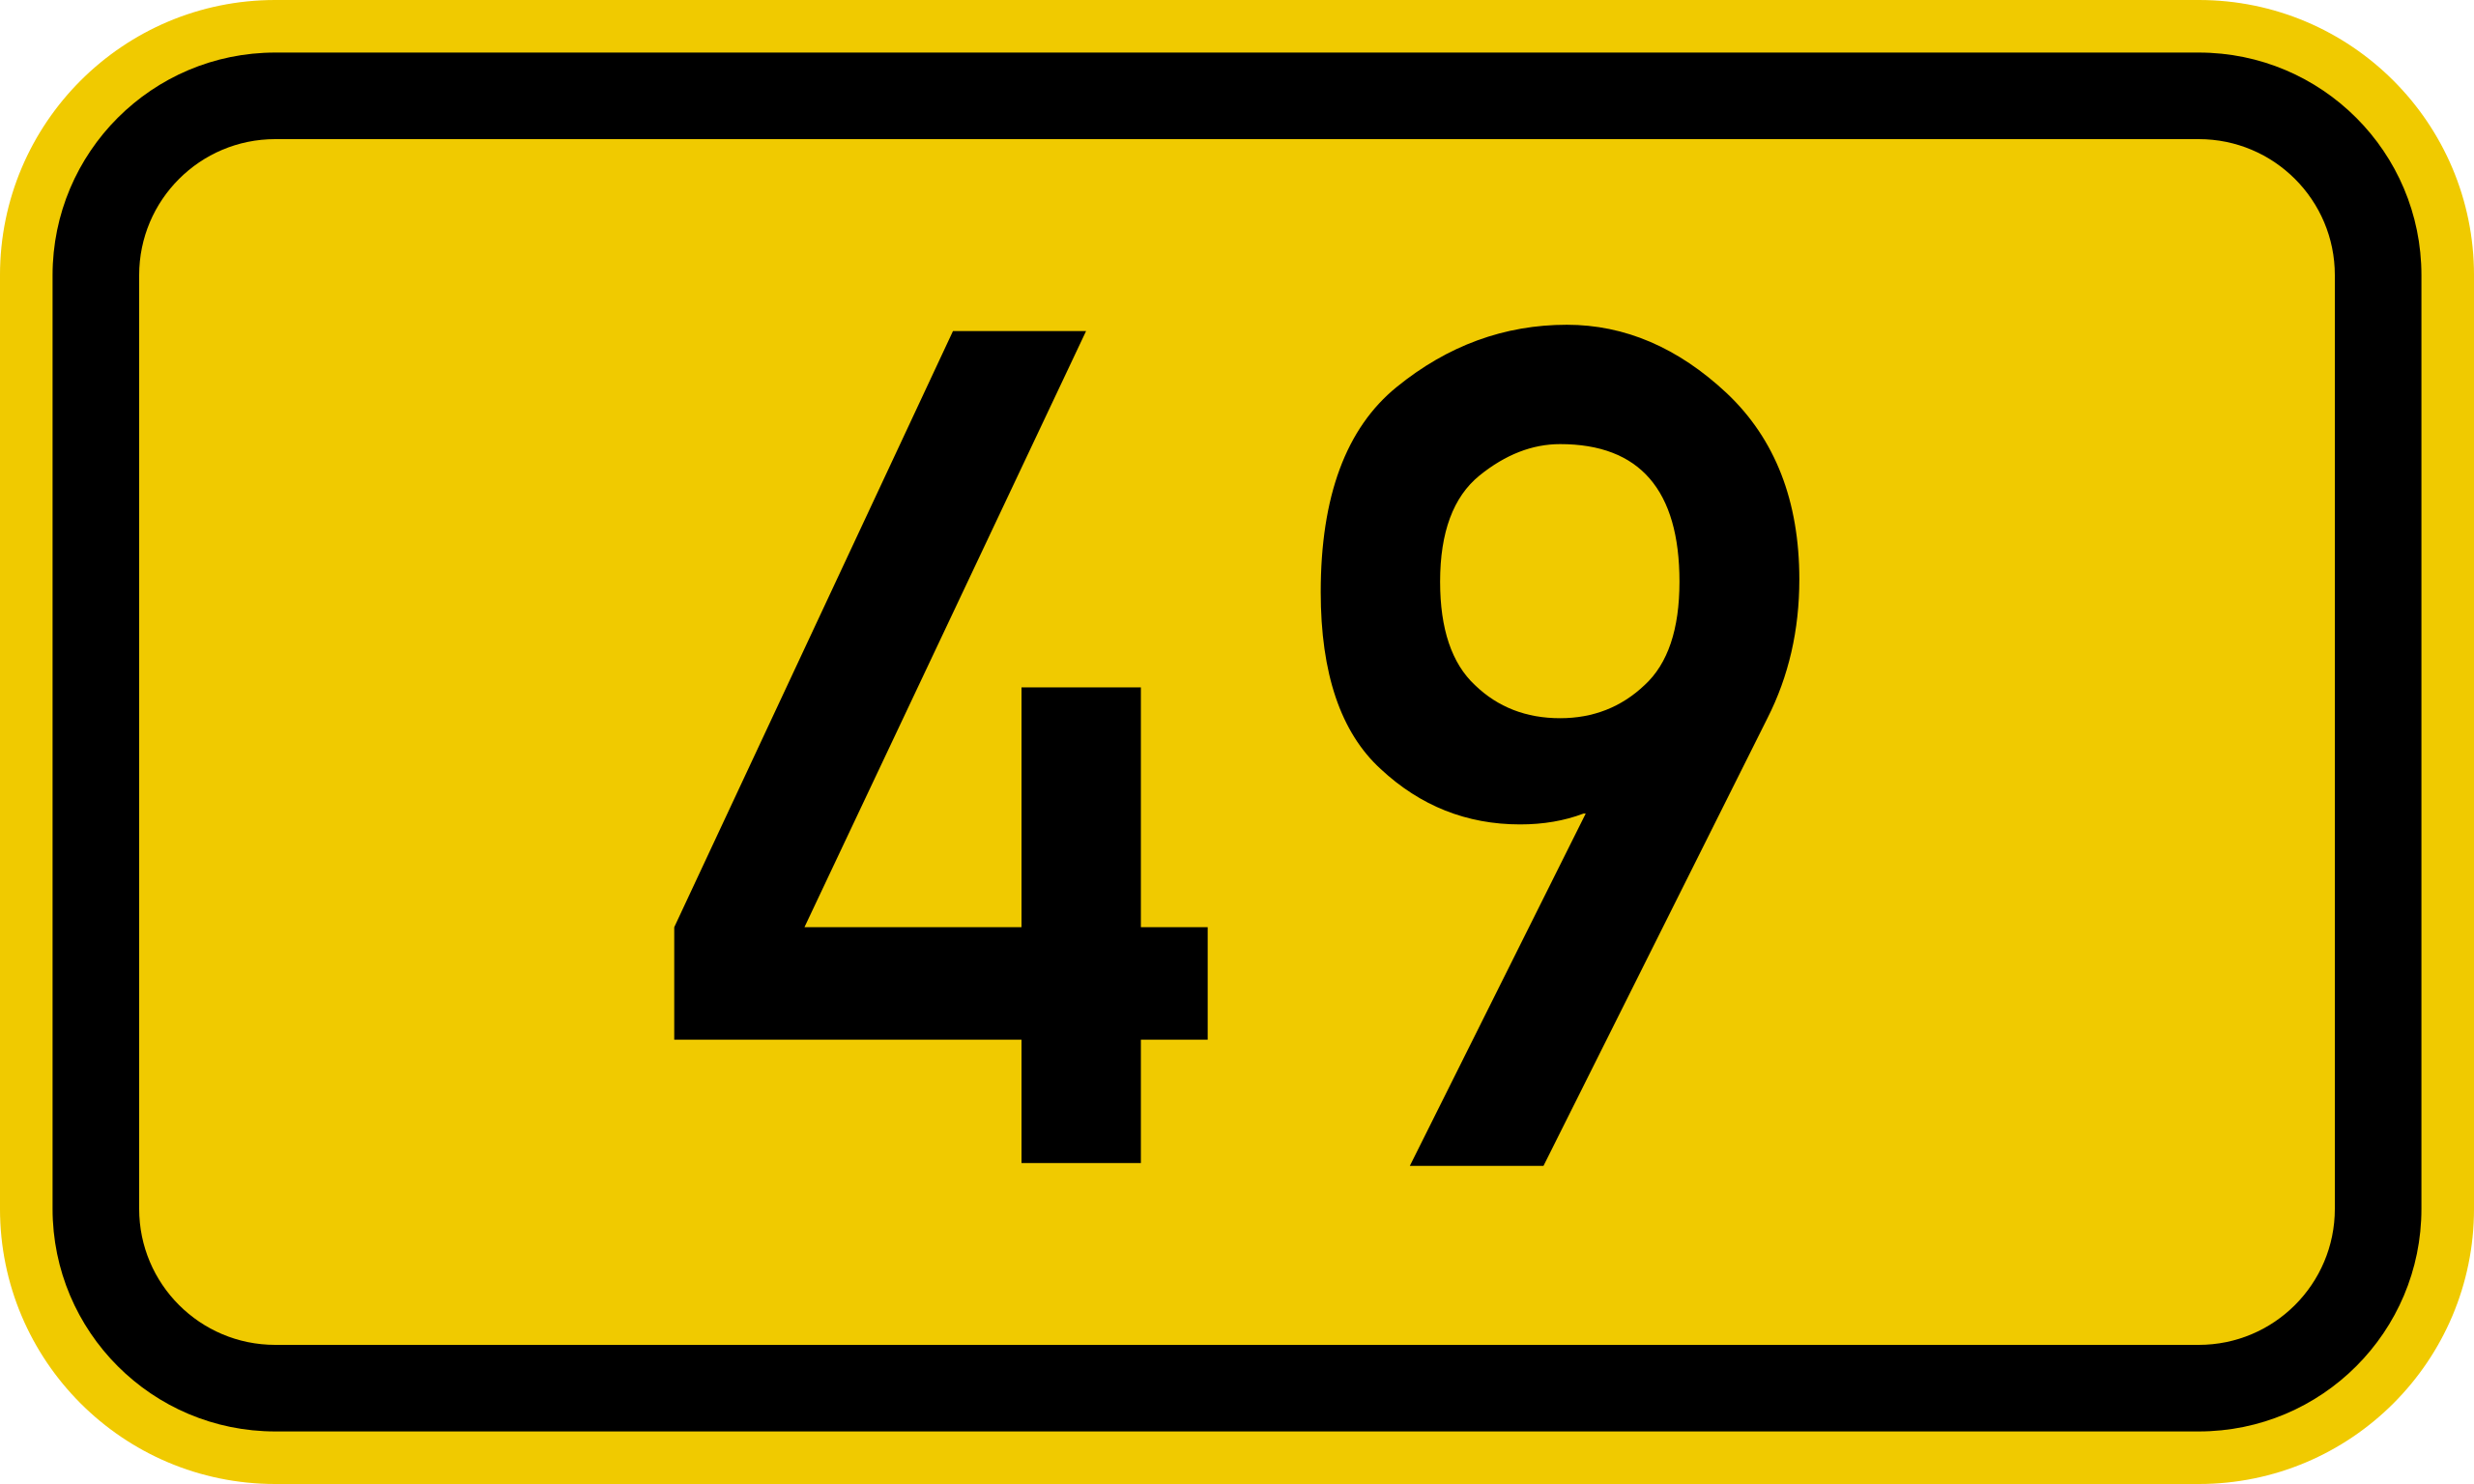 ファイル:Bundesstraße 49 number.svg - Wikipedia